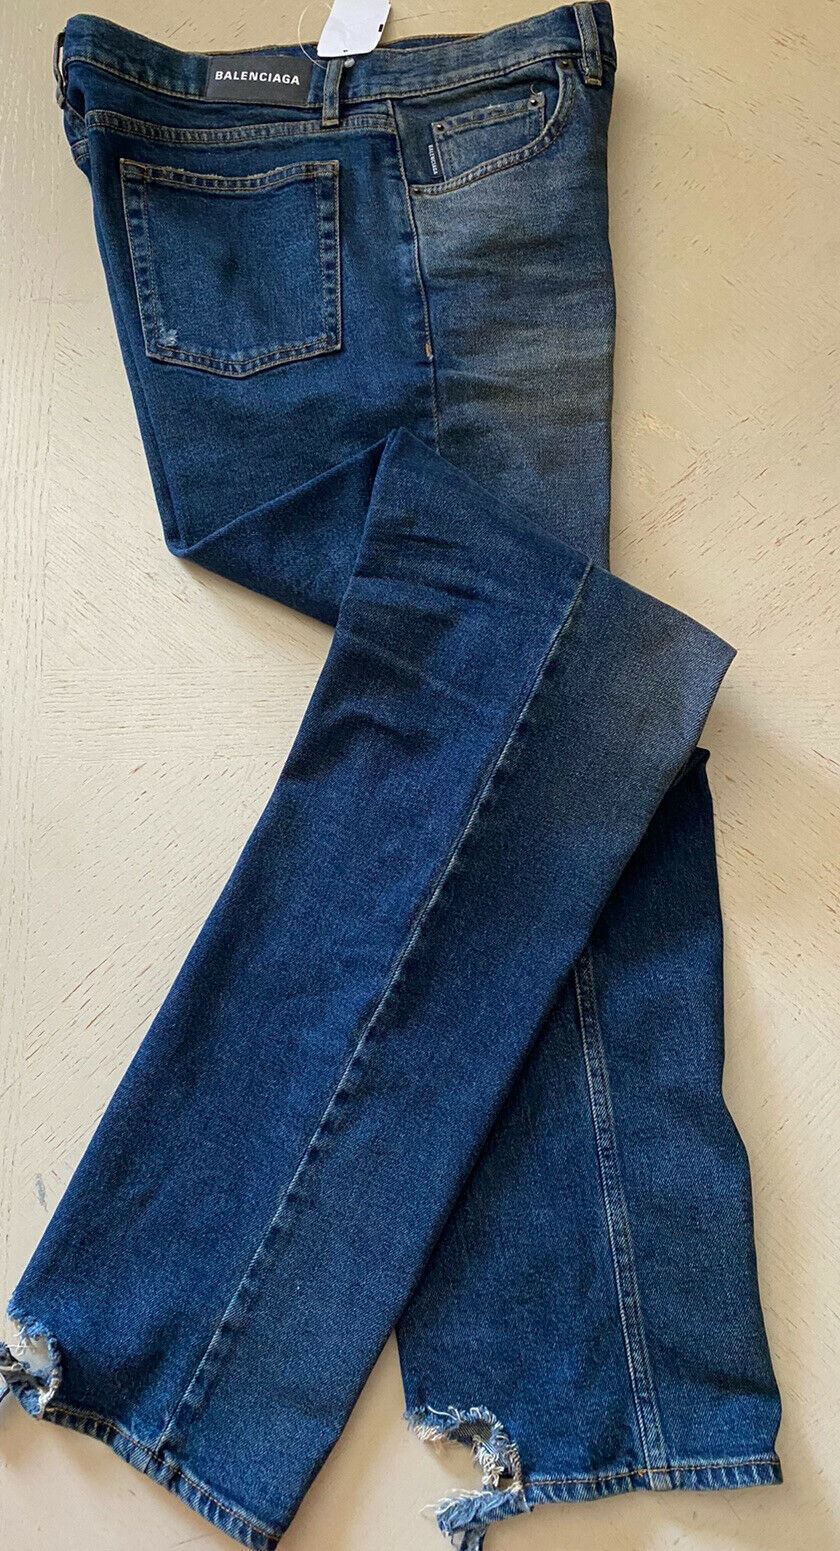 NWT Balenciaga Men’s Jeans Pants DK Rust 32 US ( 48 Eu ) Italy